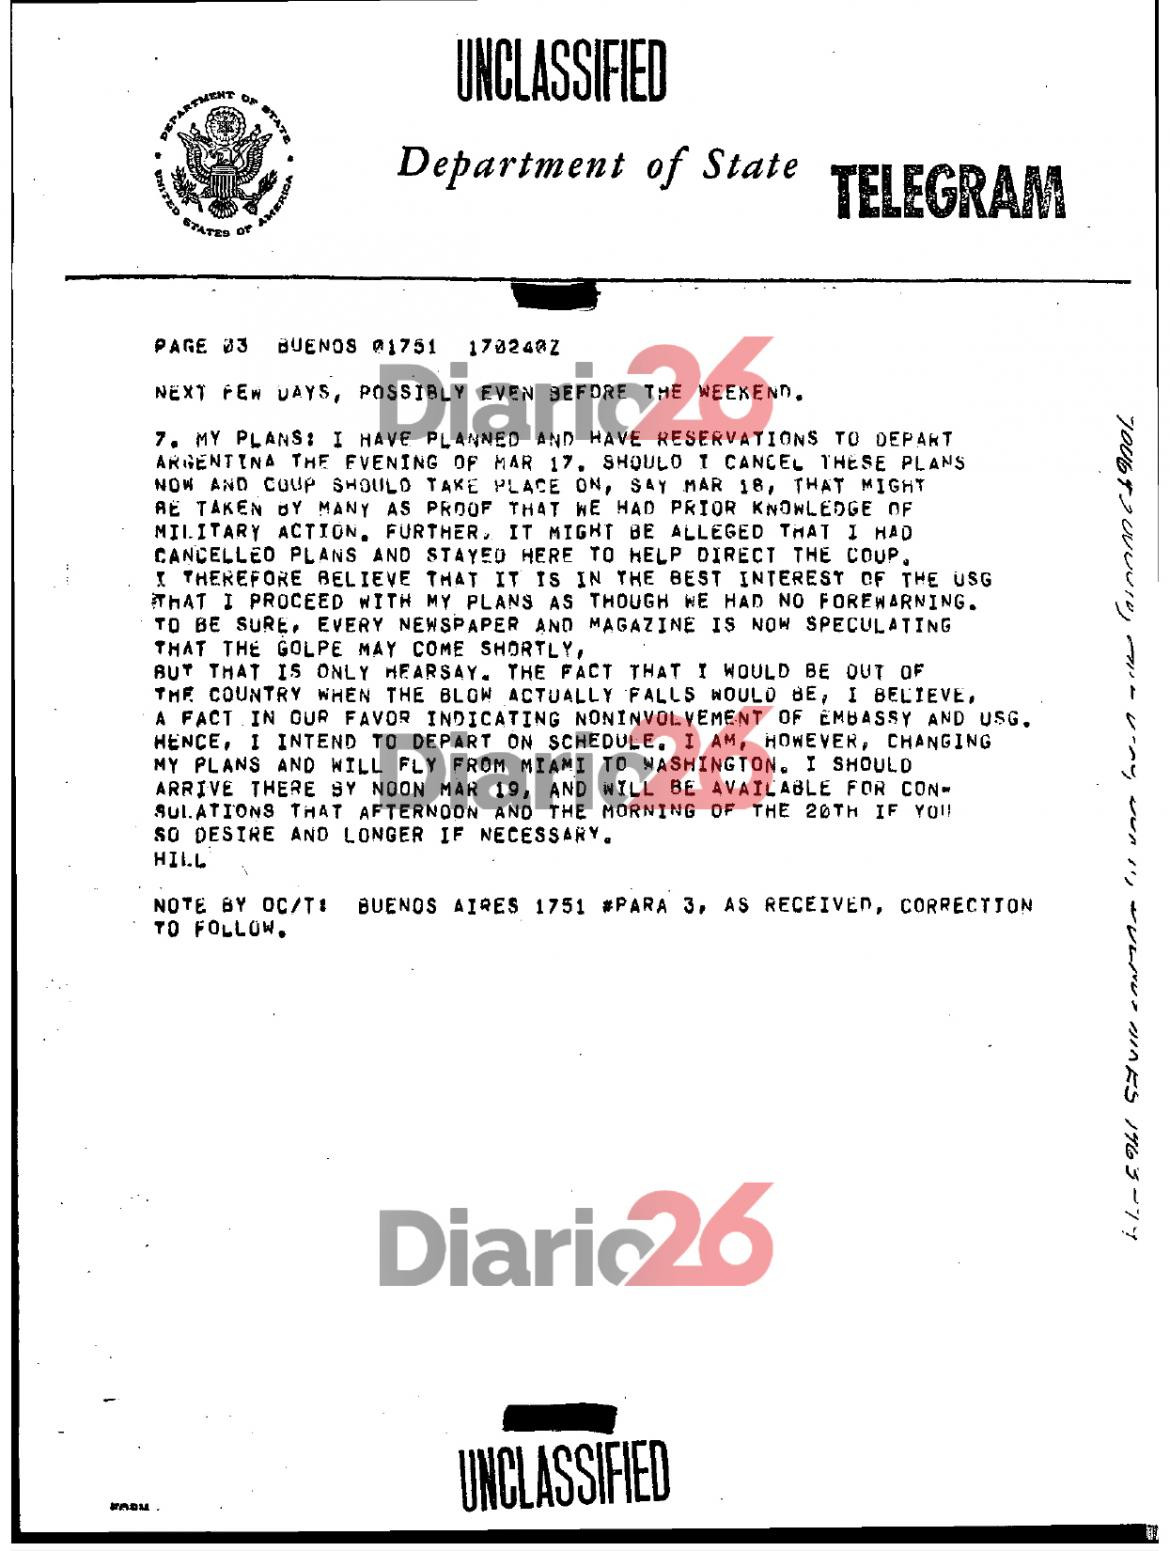 24 de marzo de 1976, golpe militar, dictadura militar en Argentina, documentos de Estados Unidos, Massera	